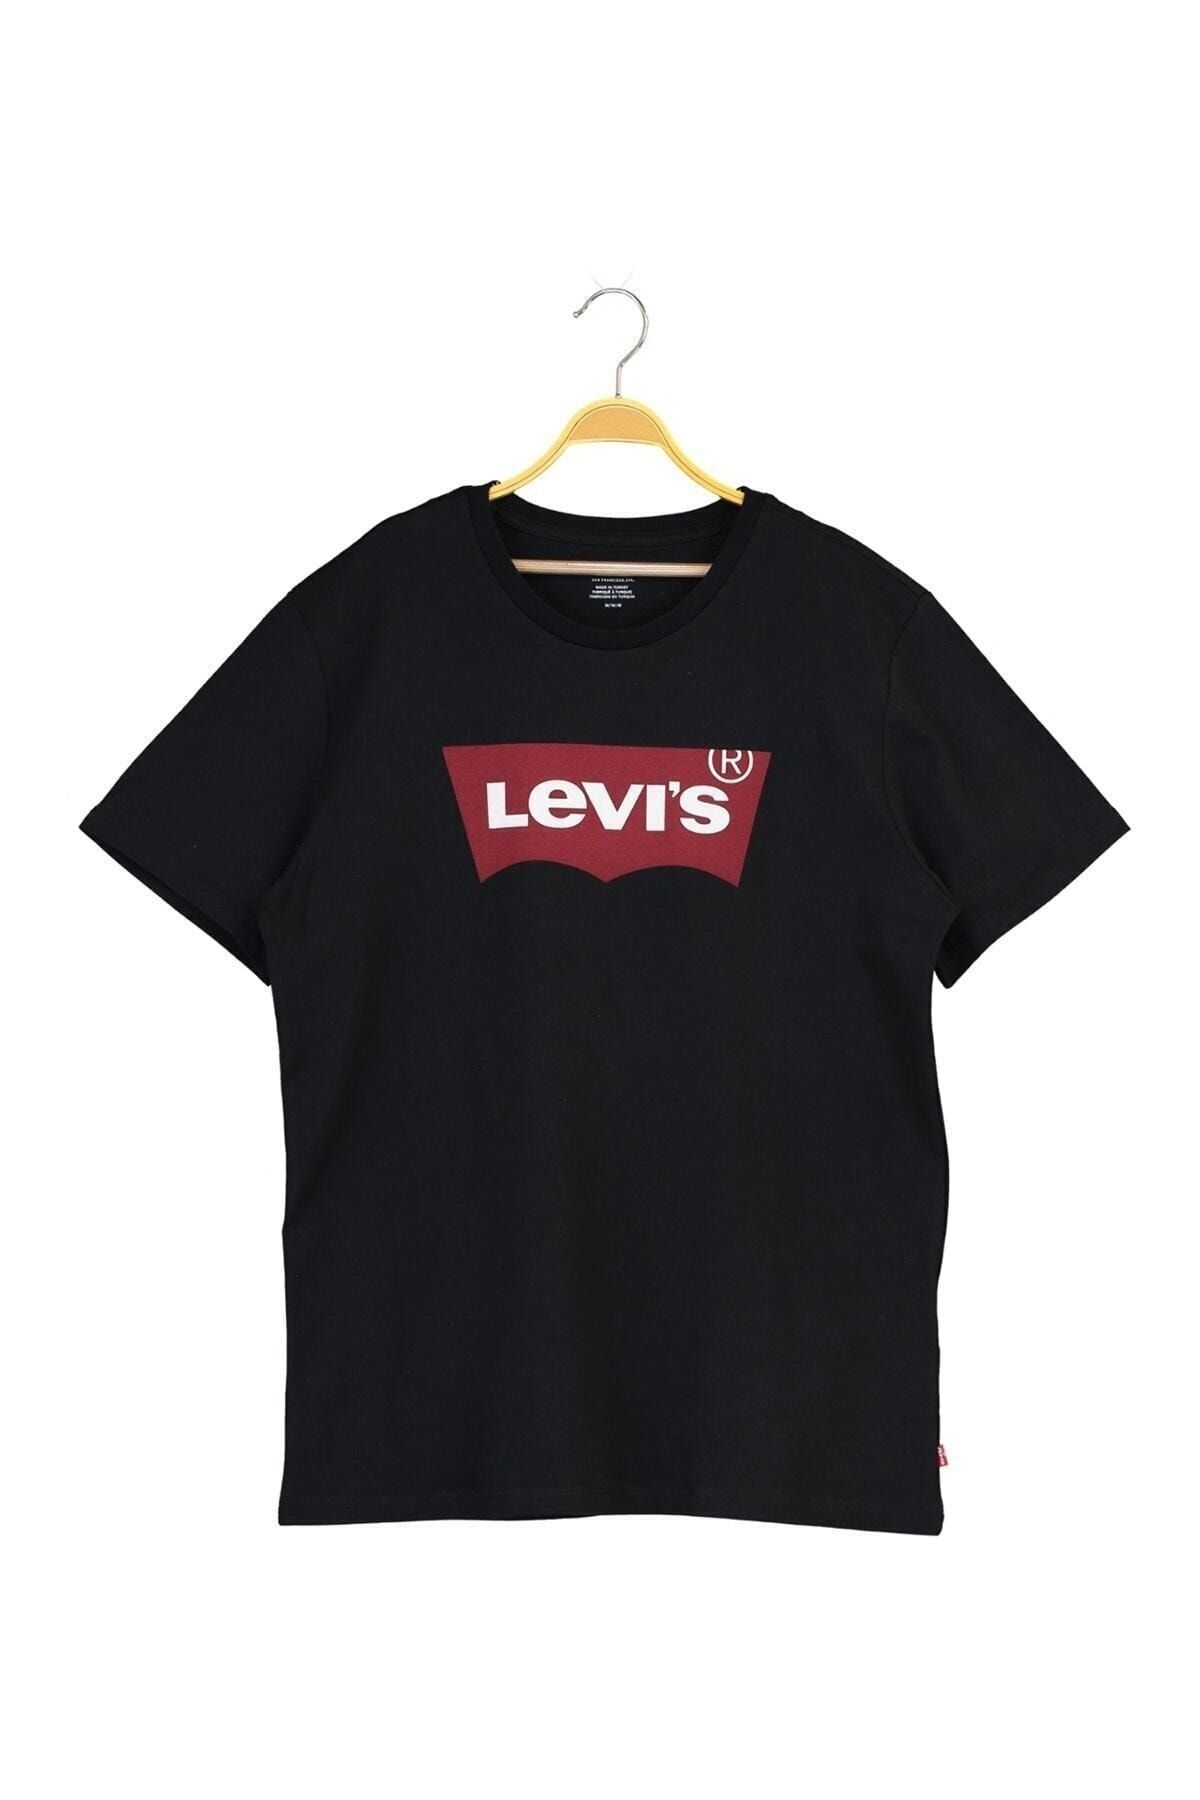 Levi's ست گرافیک یقه تی شرت مردانه گرافیکی مشکی